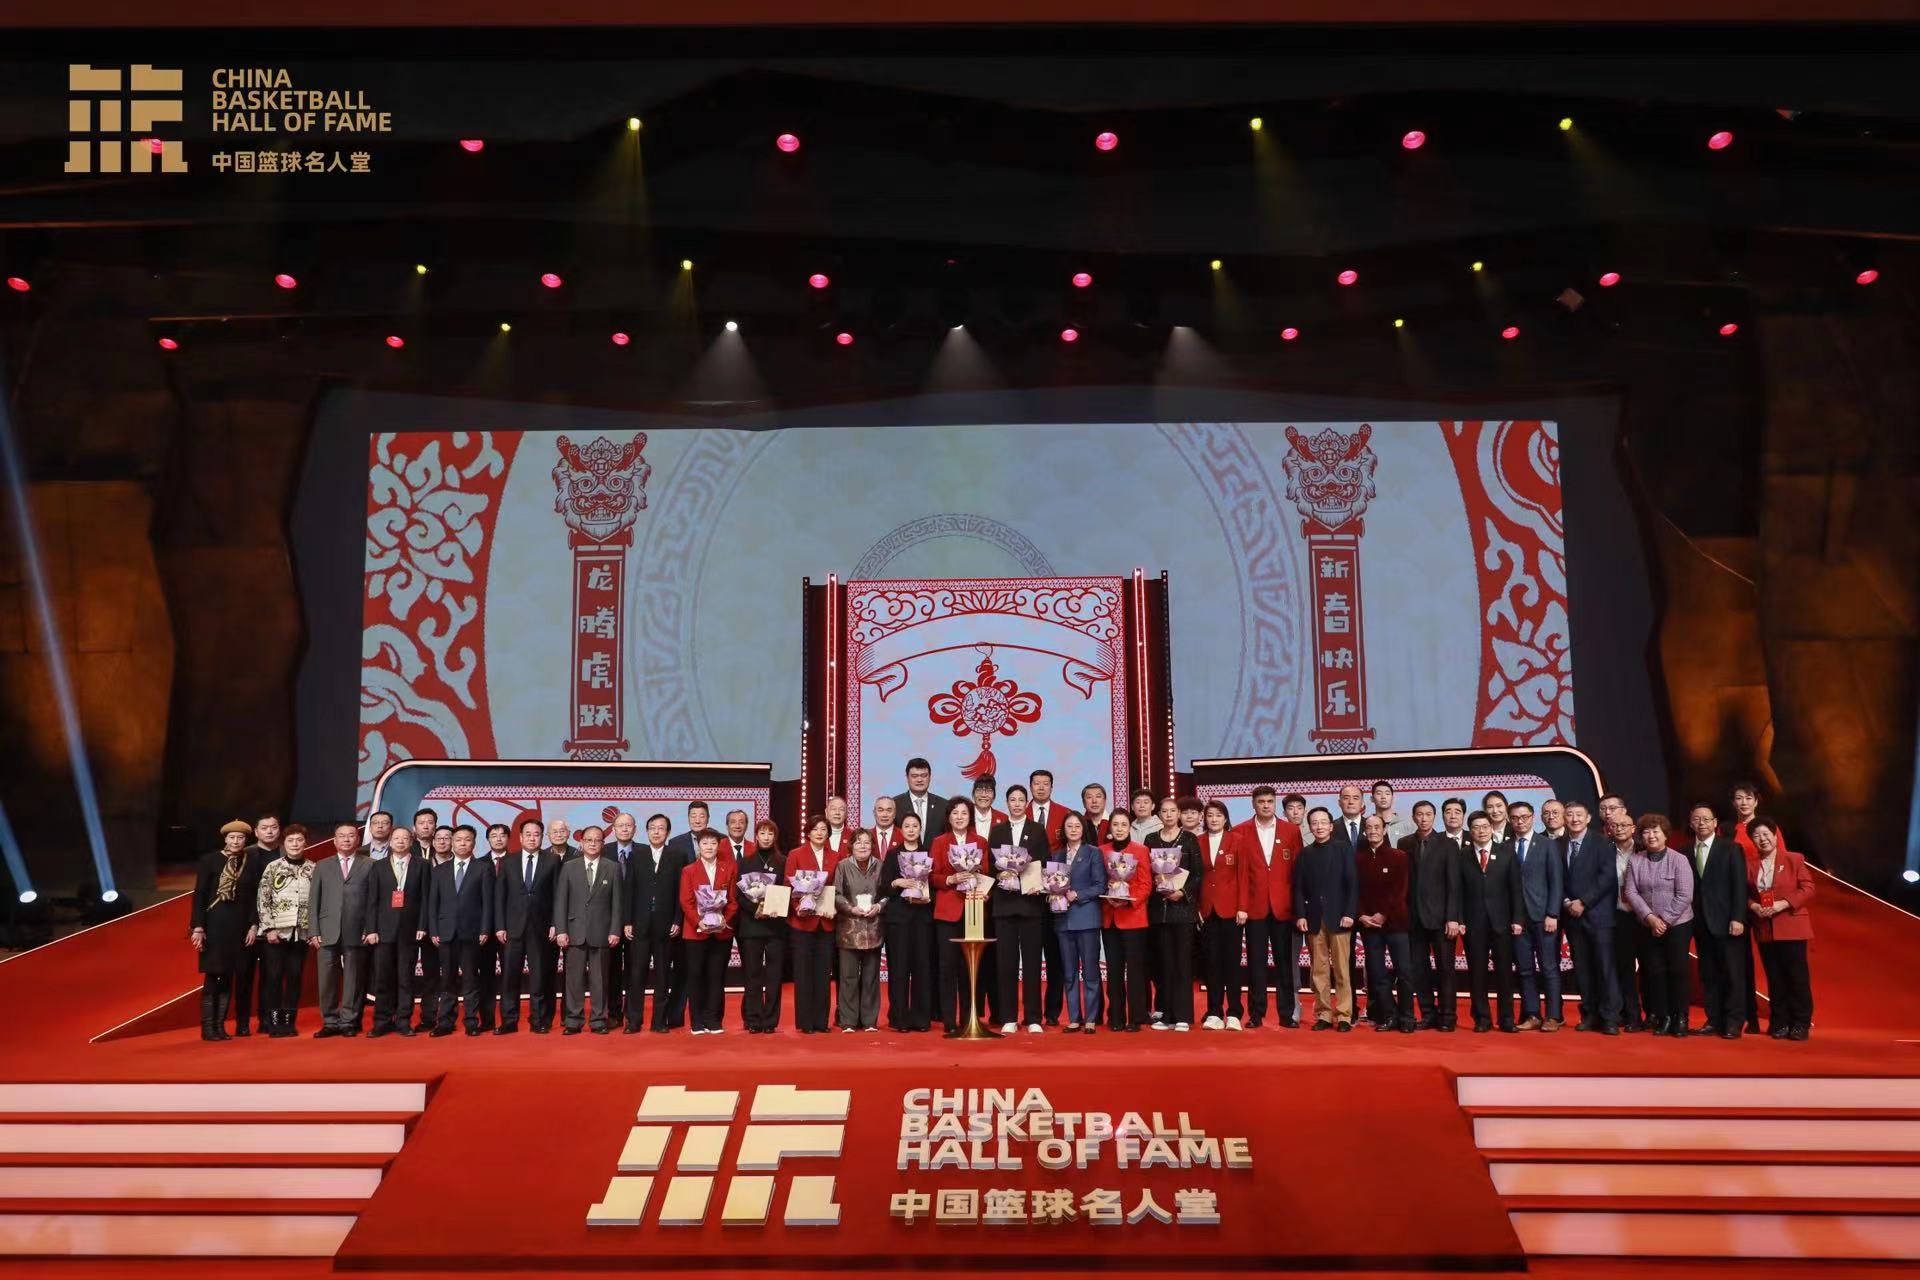 传承奋斗精神引领篮球新的长征—— 2023年中国篮球名人堂入堂仪式在延安举行